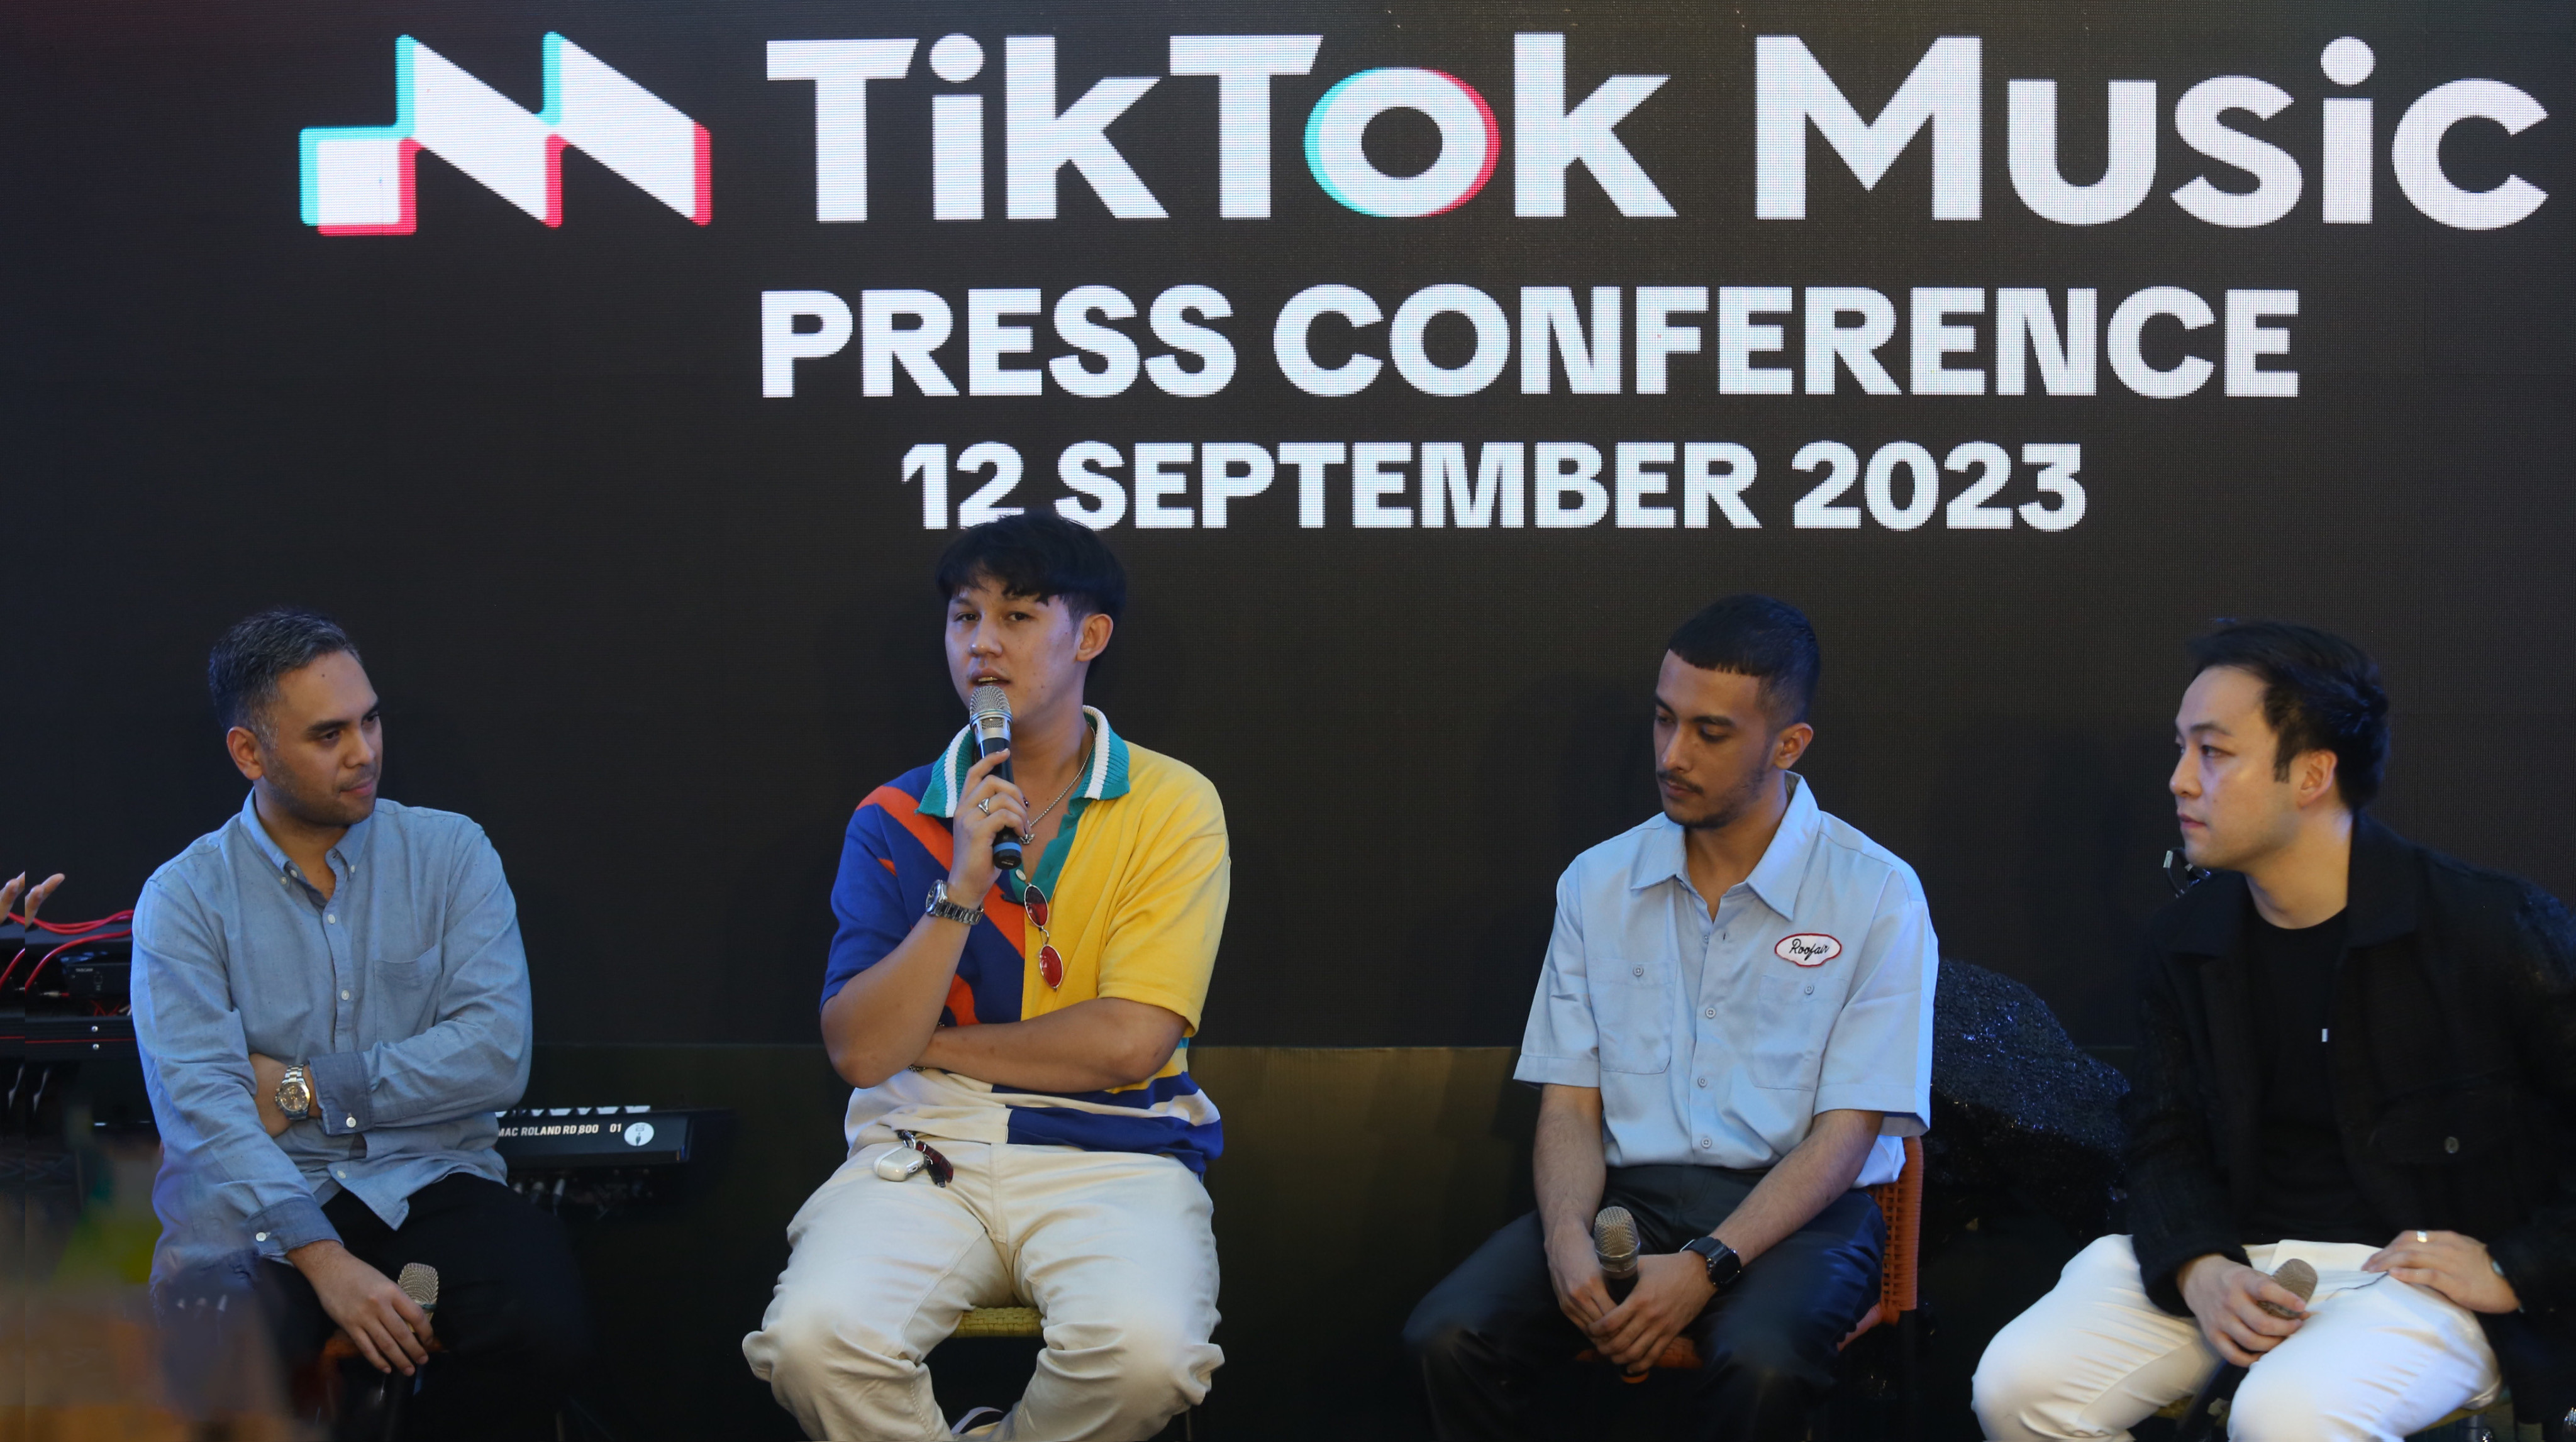 Tempat Bertemunya Musik Dan Kreativitas, Tiktok Music Resmi Hadir Di Indonesia